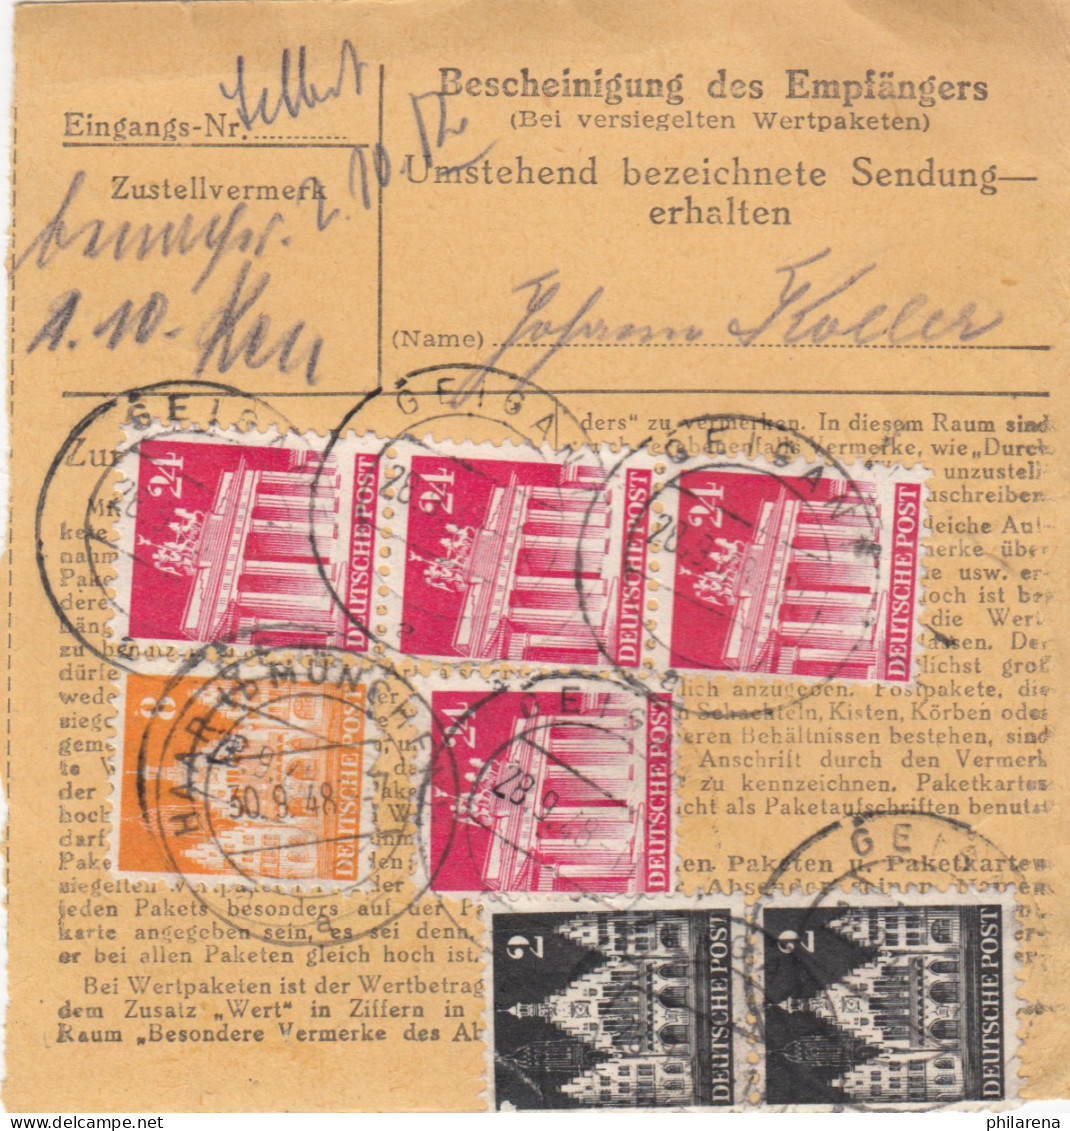 BiZone Paketkarte 1948: Geigant Nach Post Haar - Briefe U. Dokumente